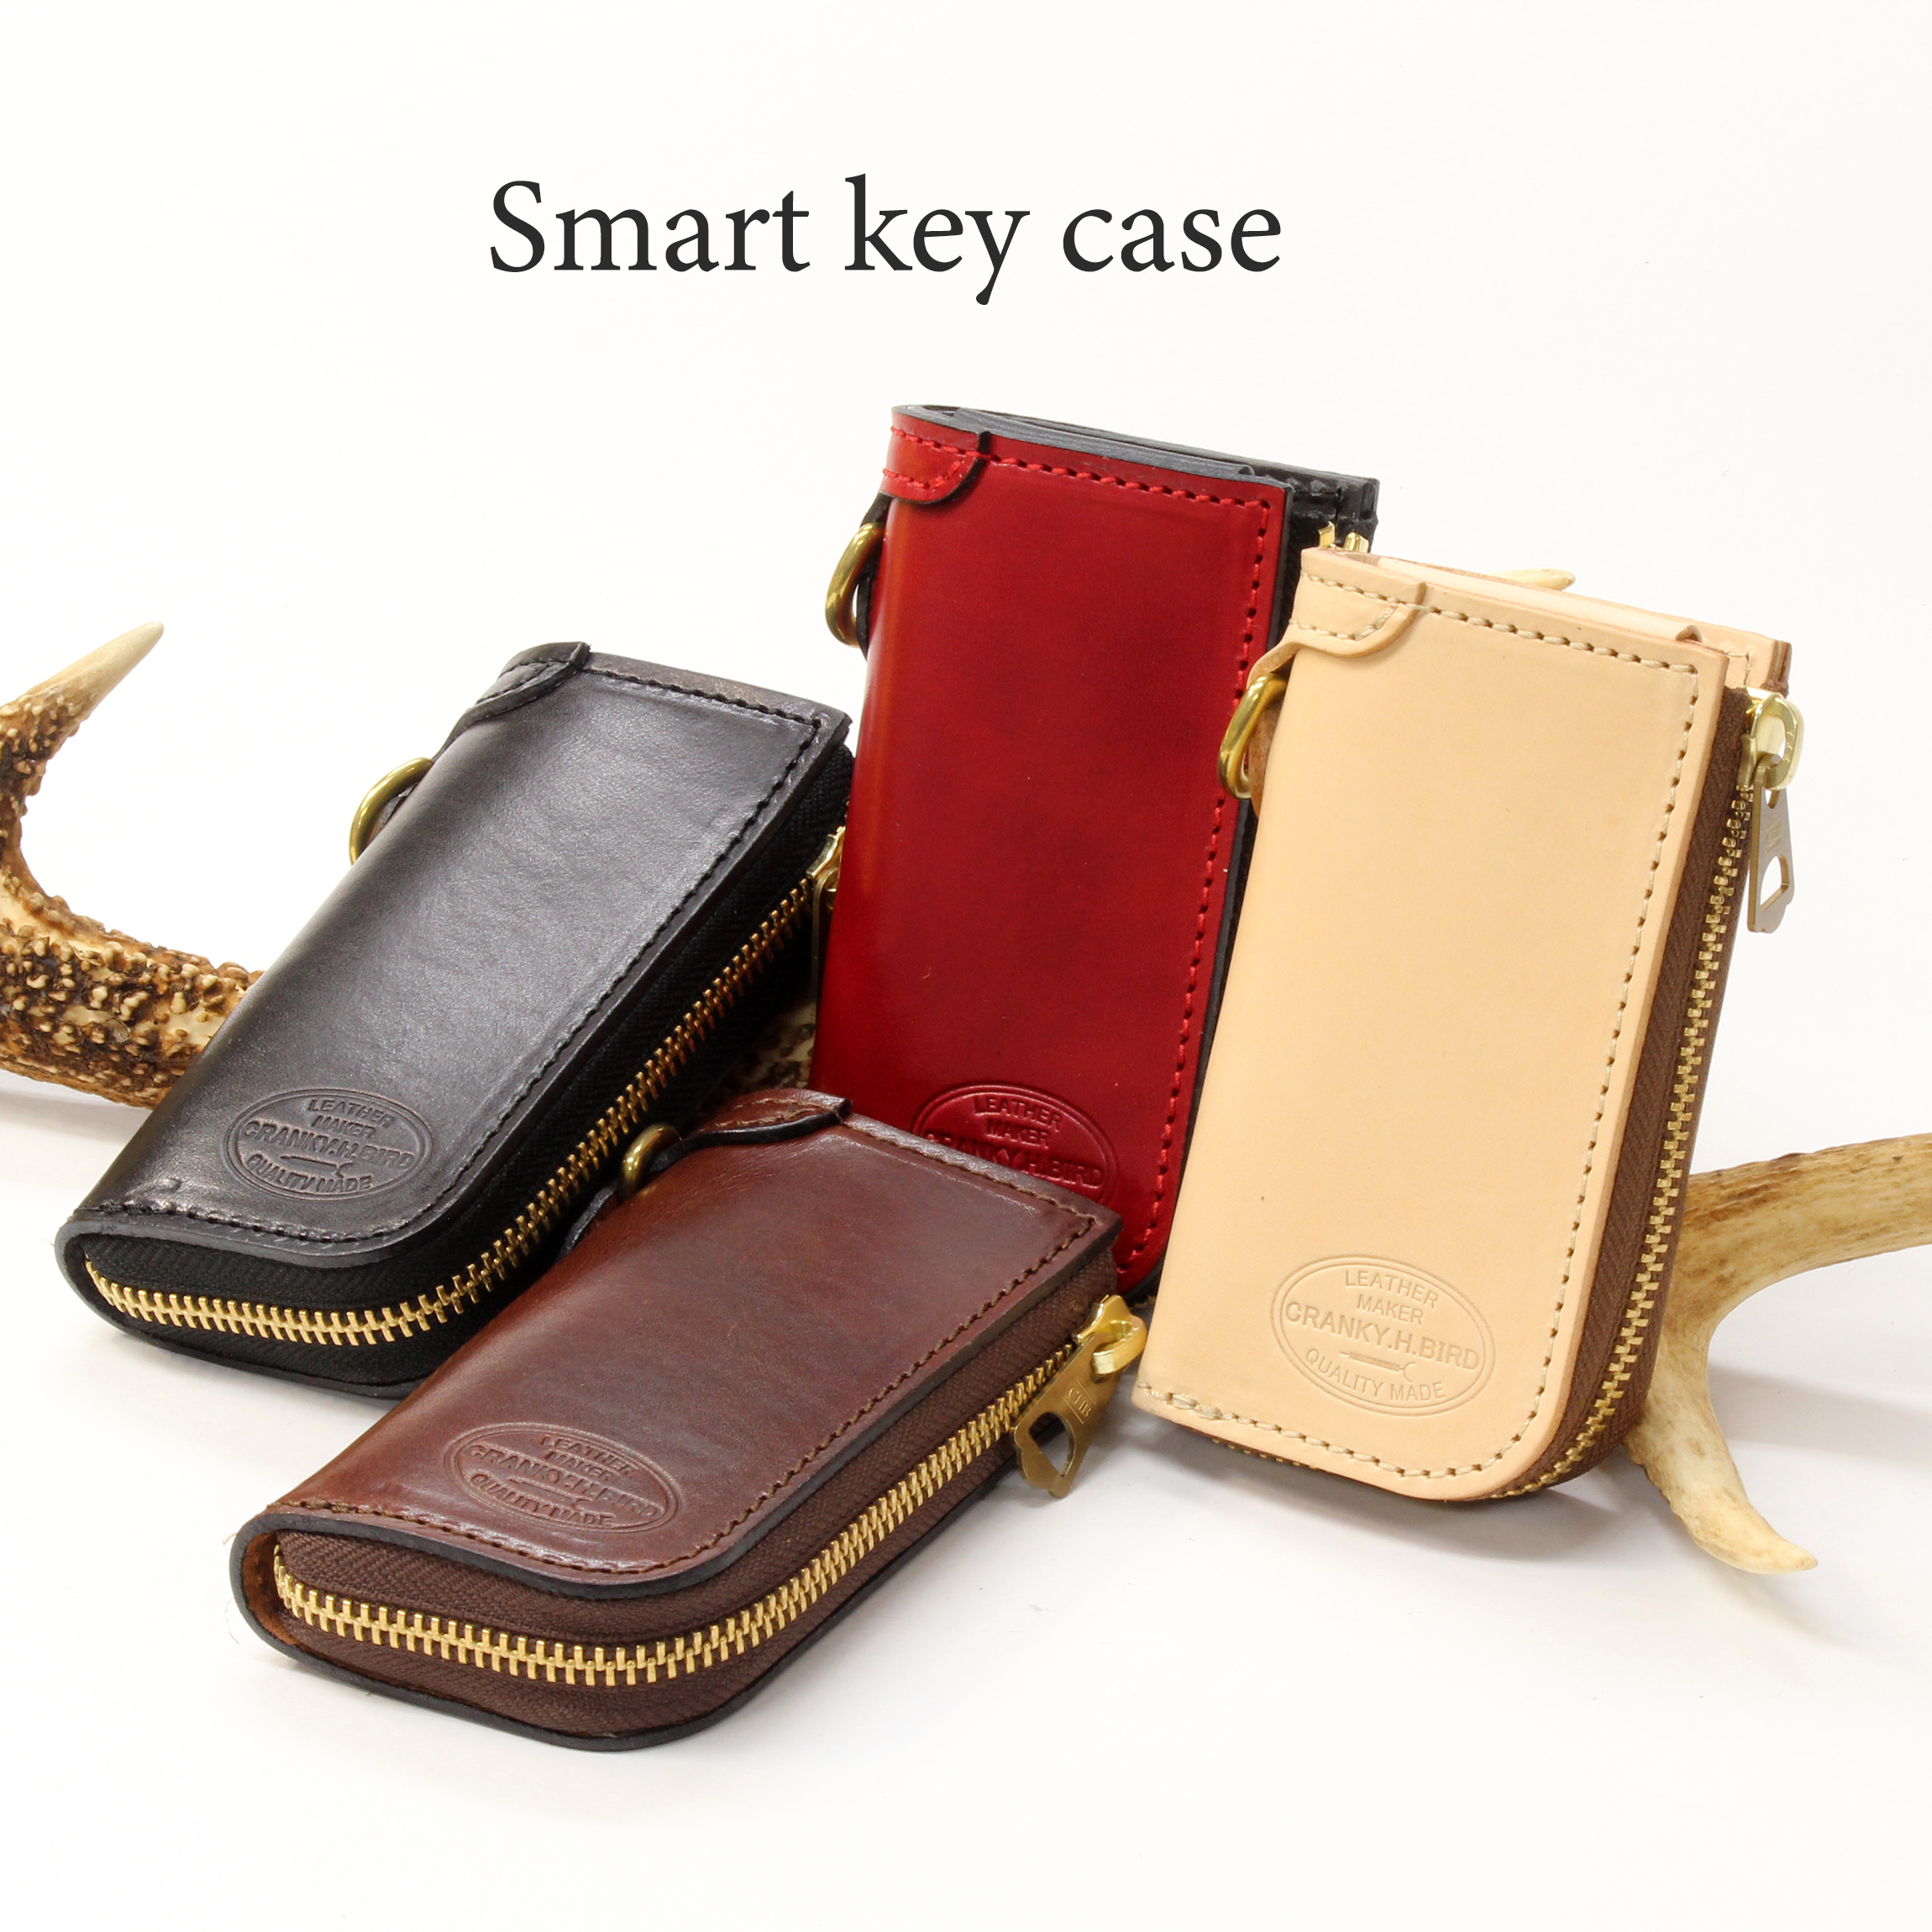 smart key case